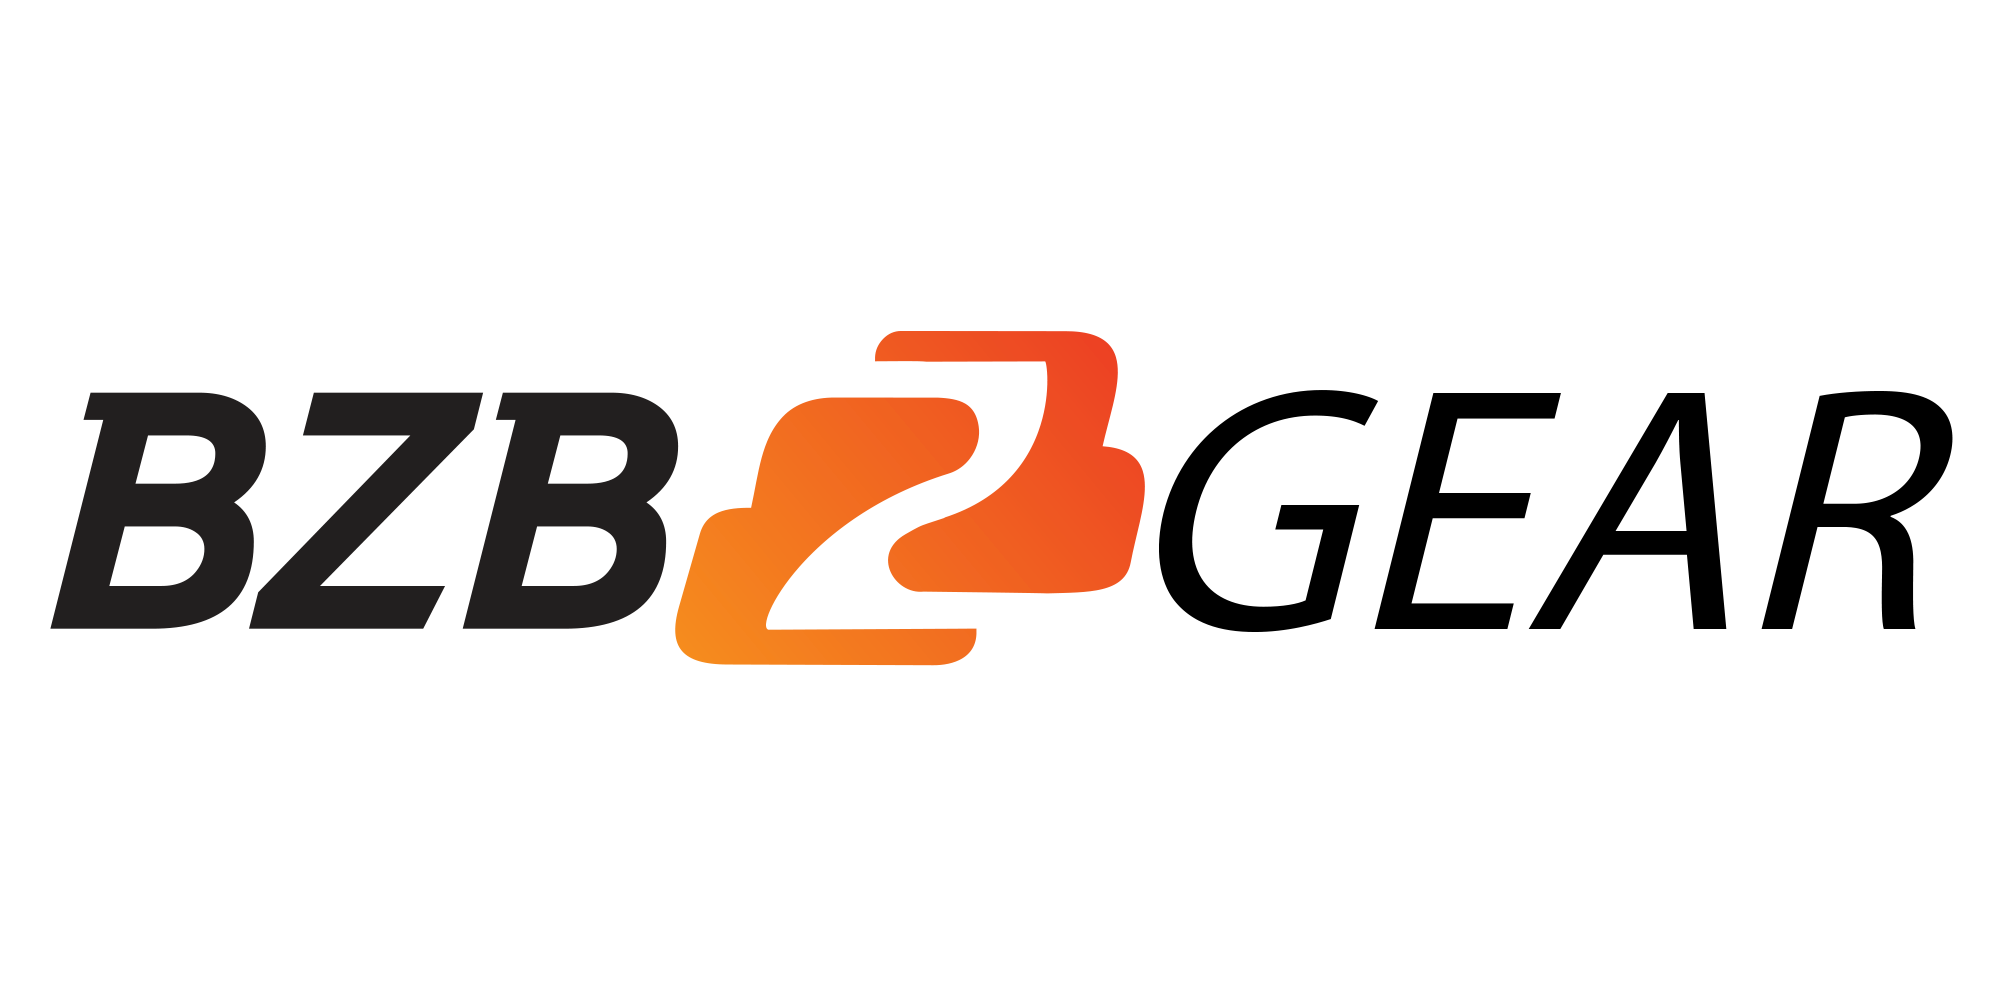 BZB Gear